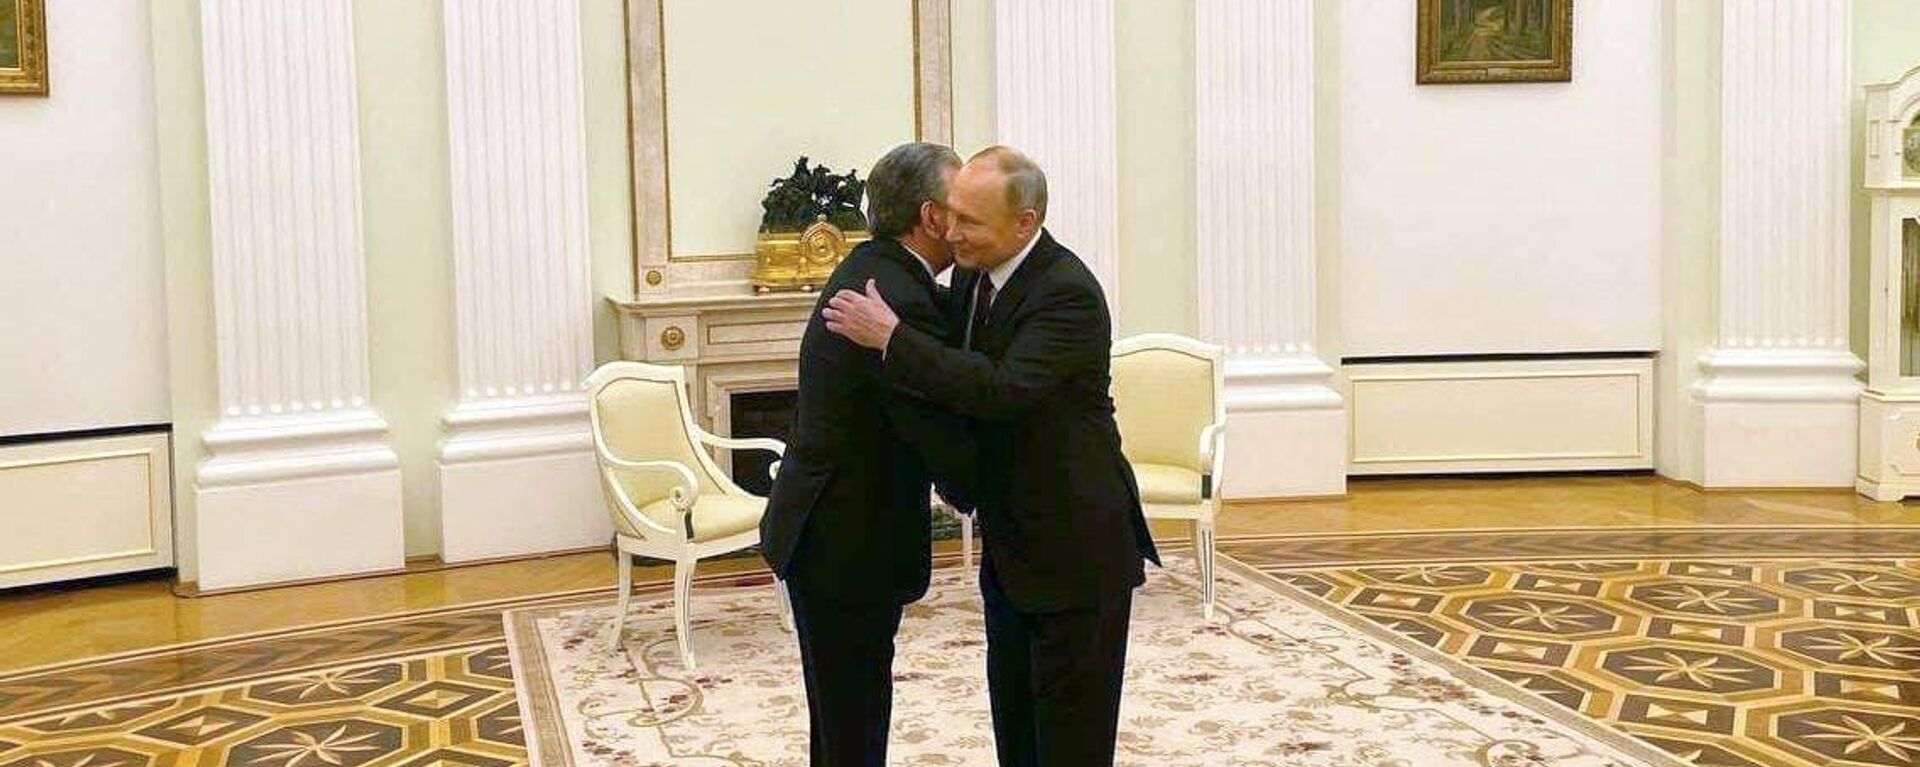 Vstrecha prezidenta Uzbekistana Shavkata Mirziyoyeva s prezidentom RF Vladimirom Putinim - Sputnik O‘zbekiston, 1920, 19.11.2021